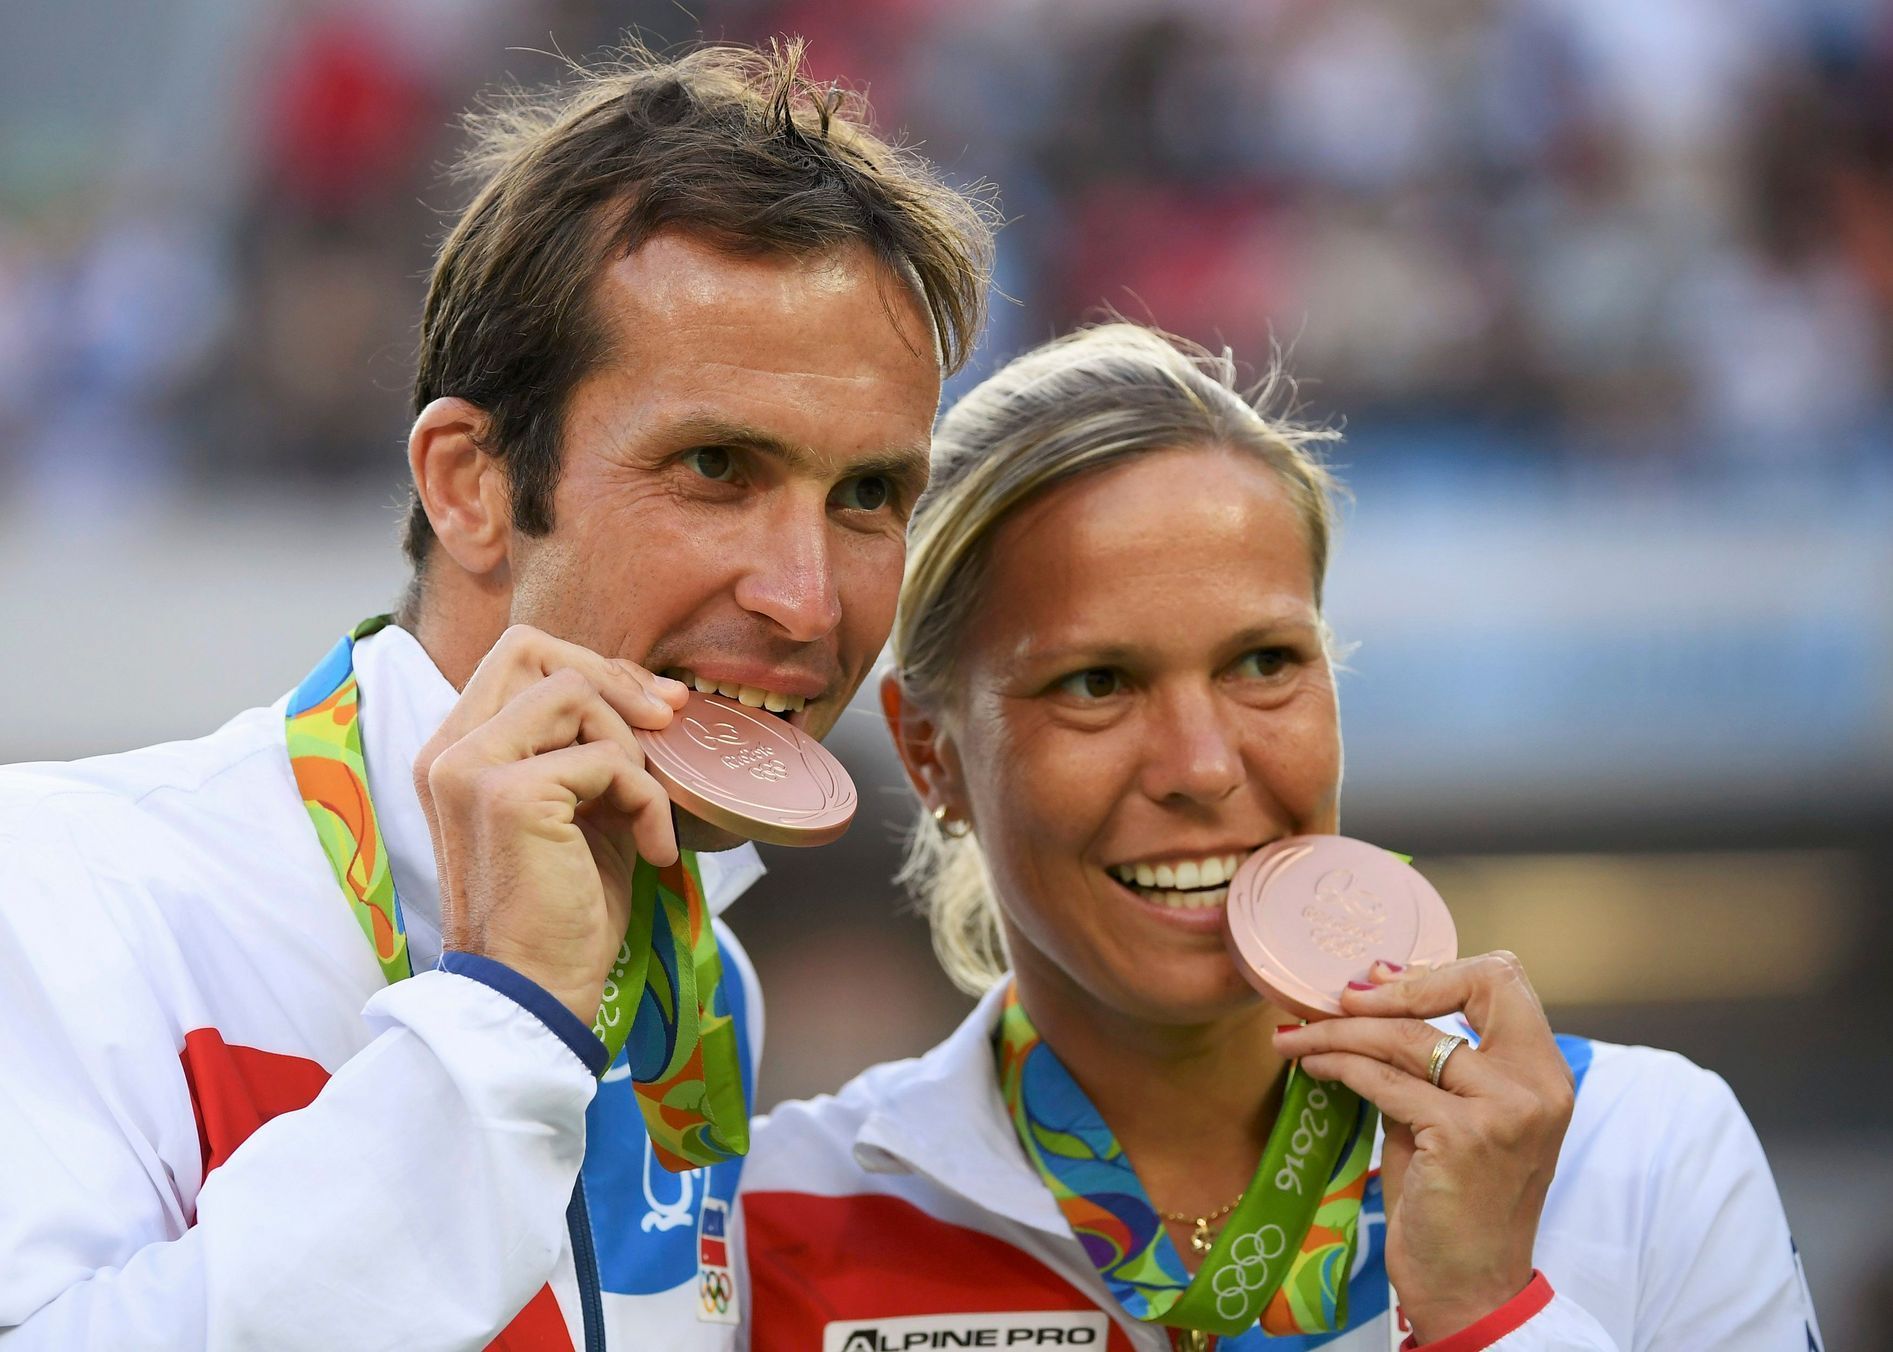 Radek Štěpánek a Lucie Hradecká s olympijskými medailemi